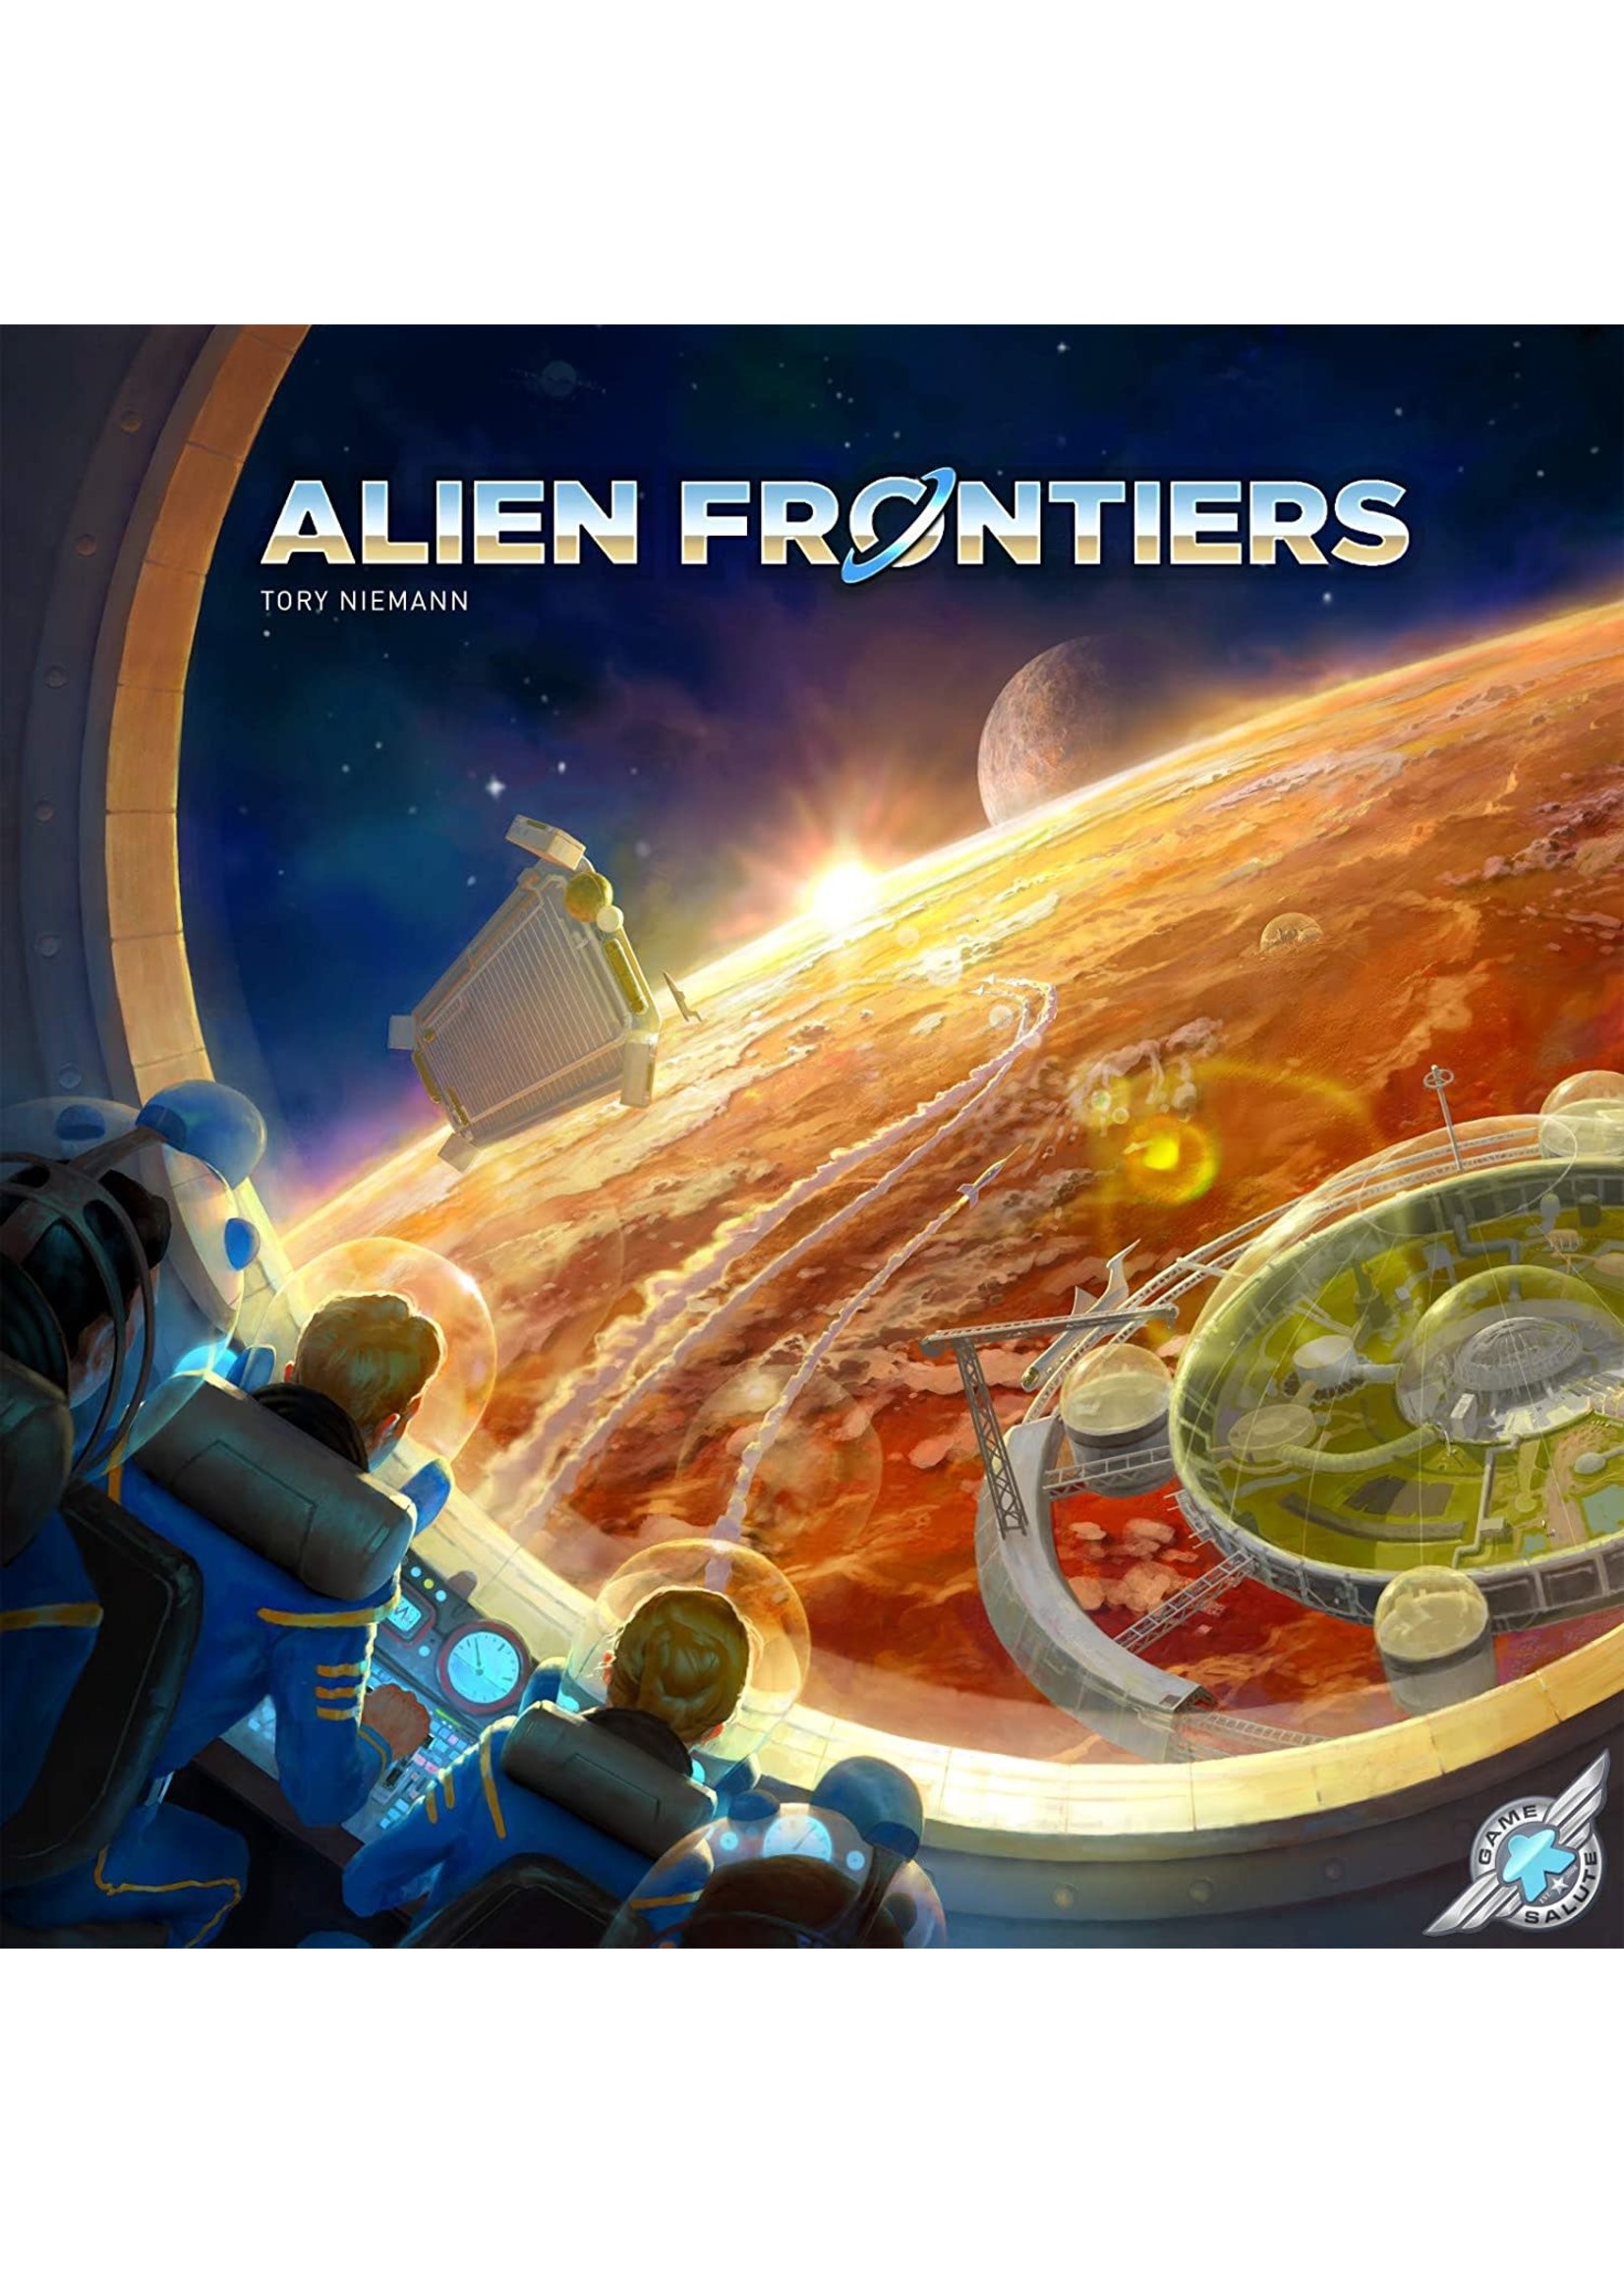 Rental RENTAL - Alien Frontiers 2 lb 13.0 oz